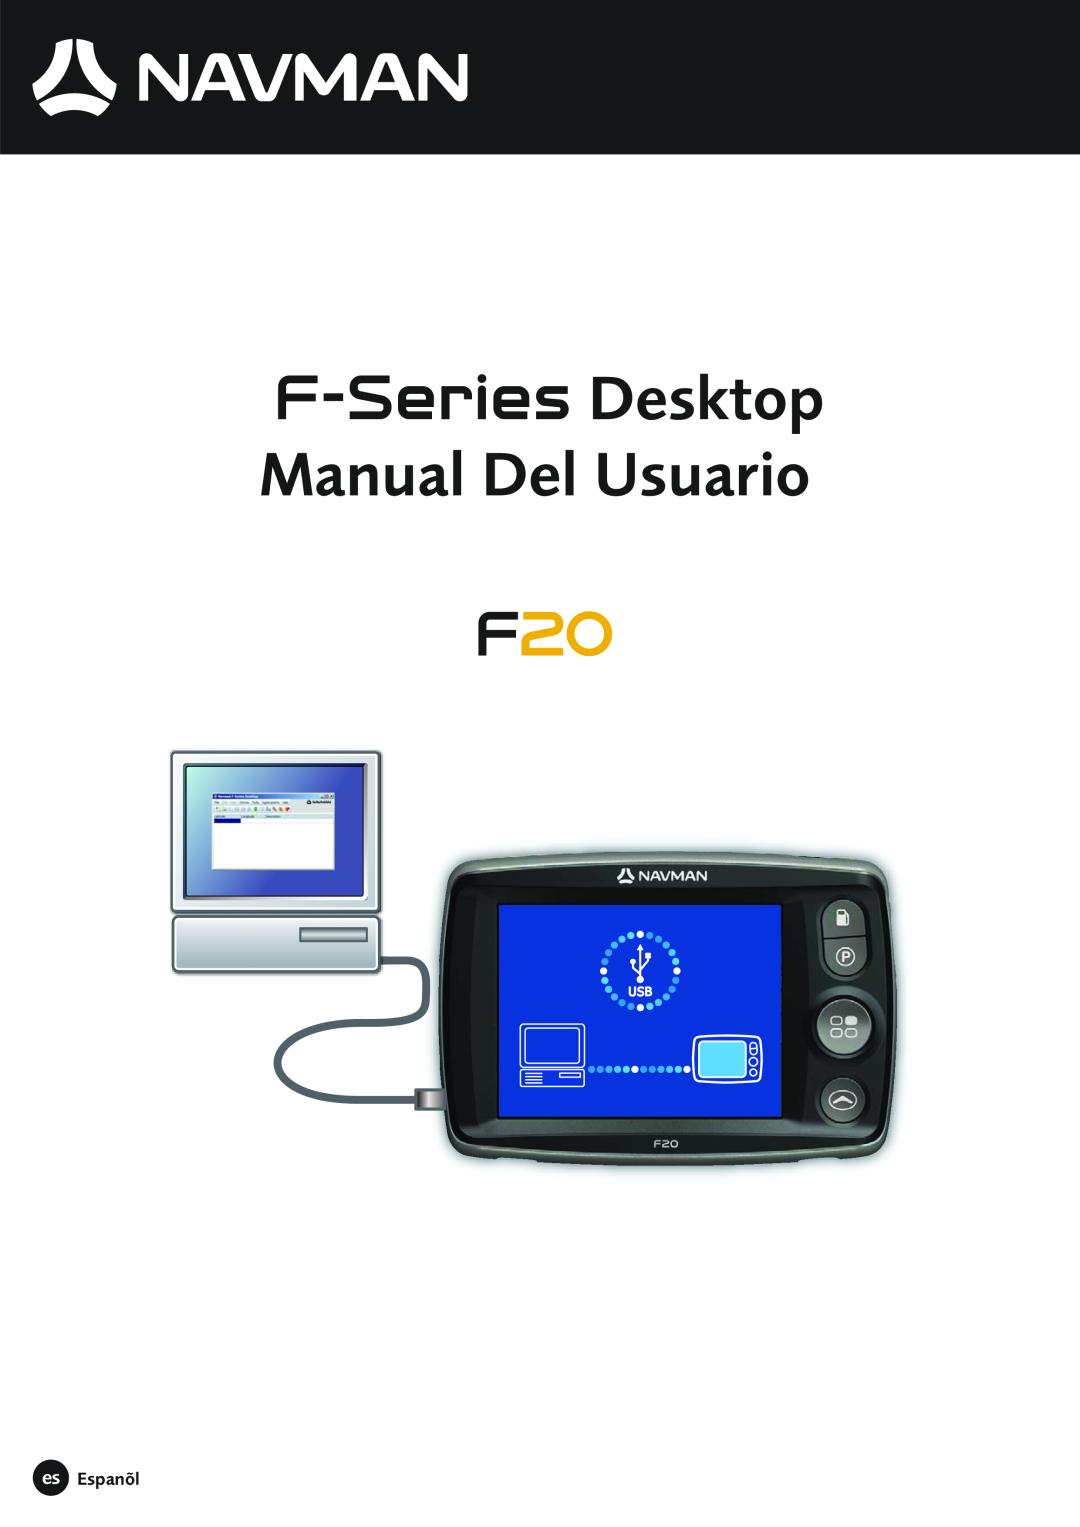 Navman F20 manual es Espanõl, F-Series Desktop Manual Del Usuario 